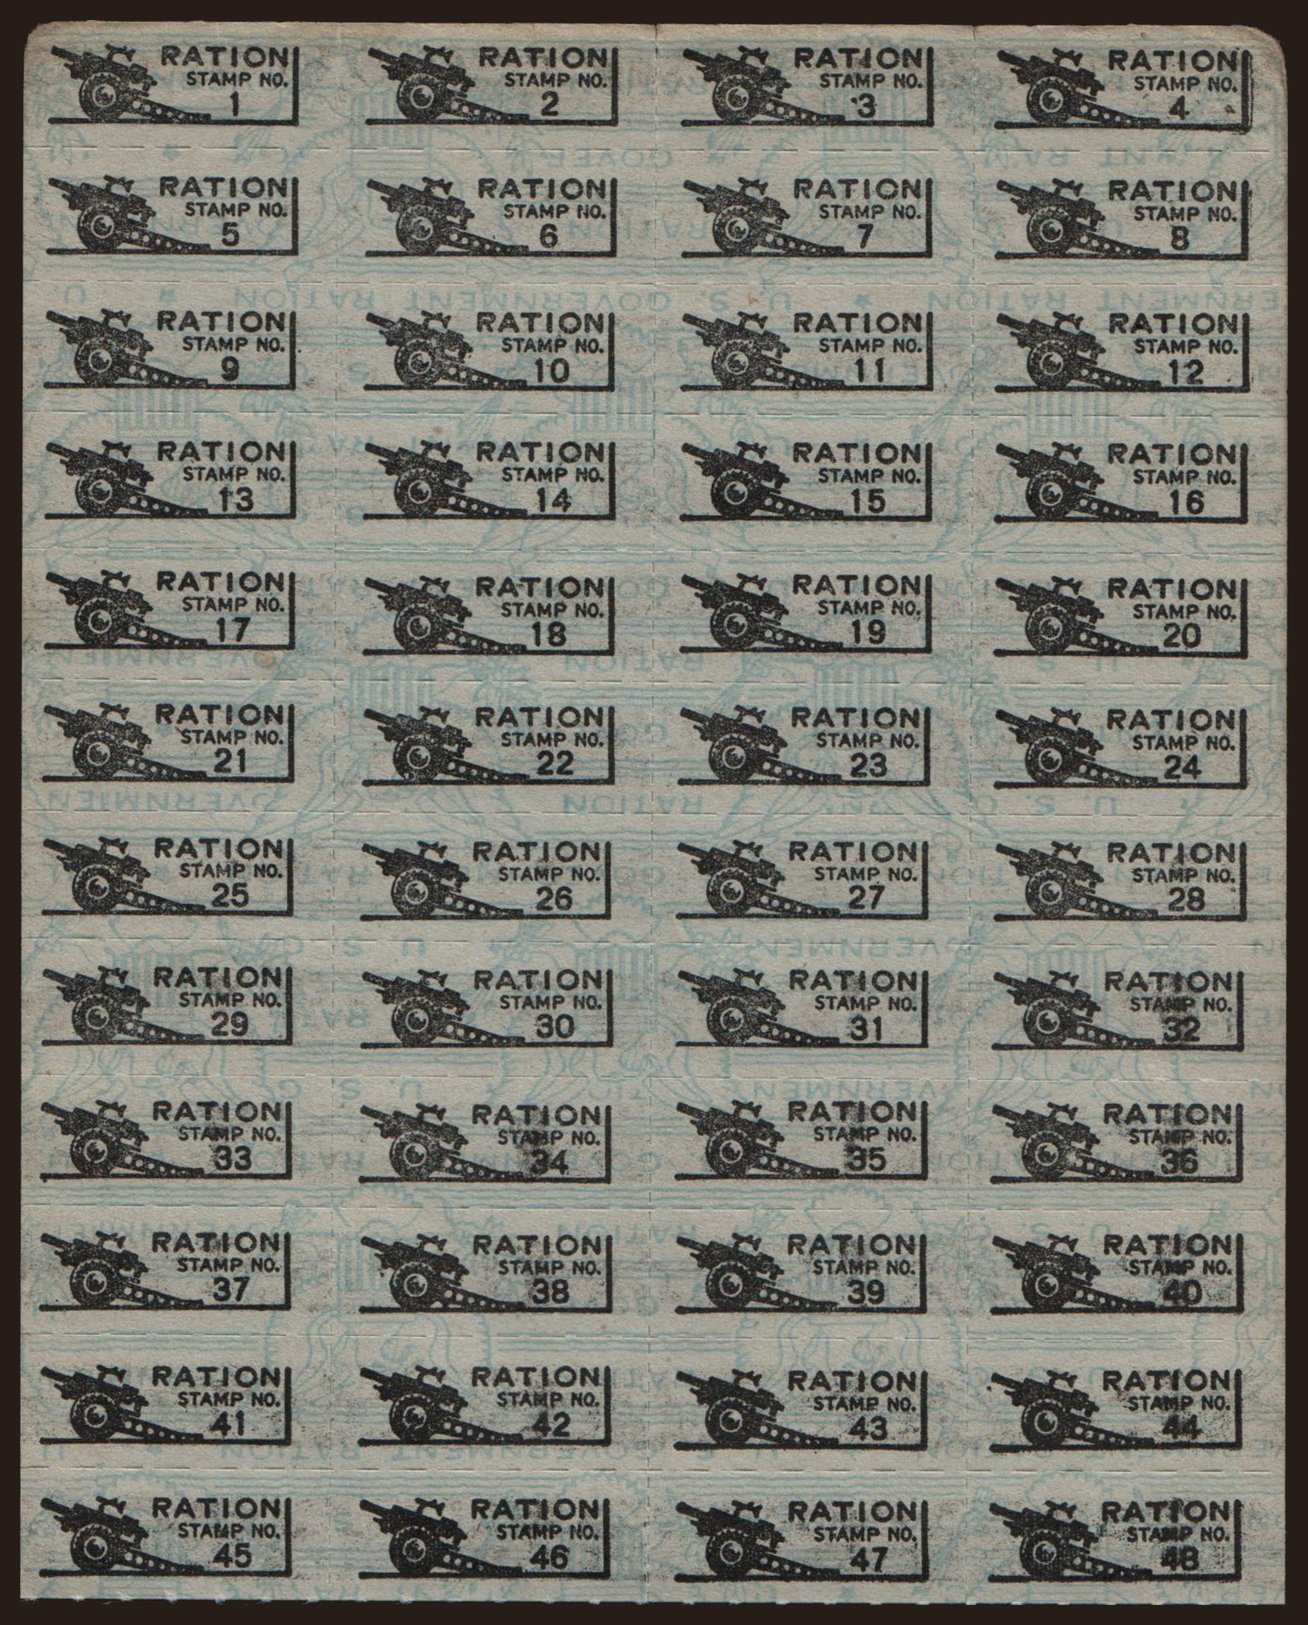 War ration coupon, 194?